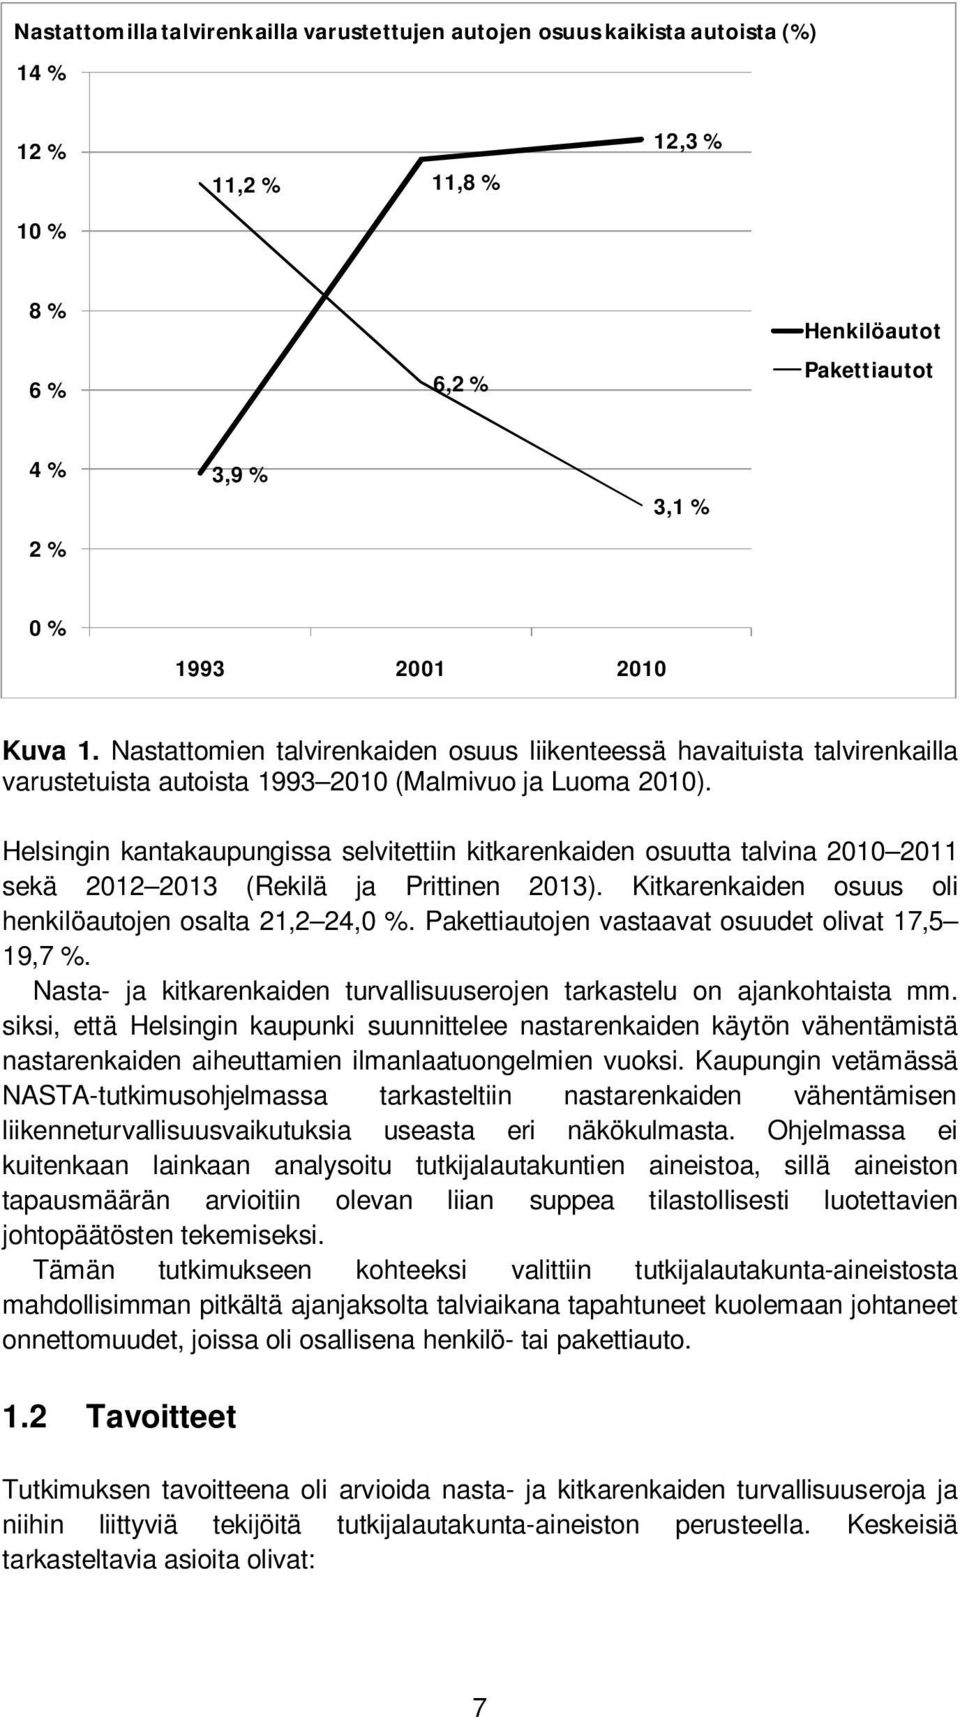 Helsingin kantakaupungissa selvitettiin kitkarenkaiden osuutta talvina 2010 2011 sekä 2012 2013 (Rekilä ja Prittinen 2013). Kitkarenkaiden osuus oli henkilöautojen osalta 21,2 24,0 %.